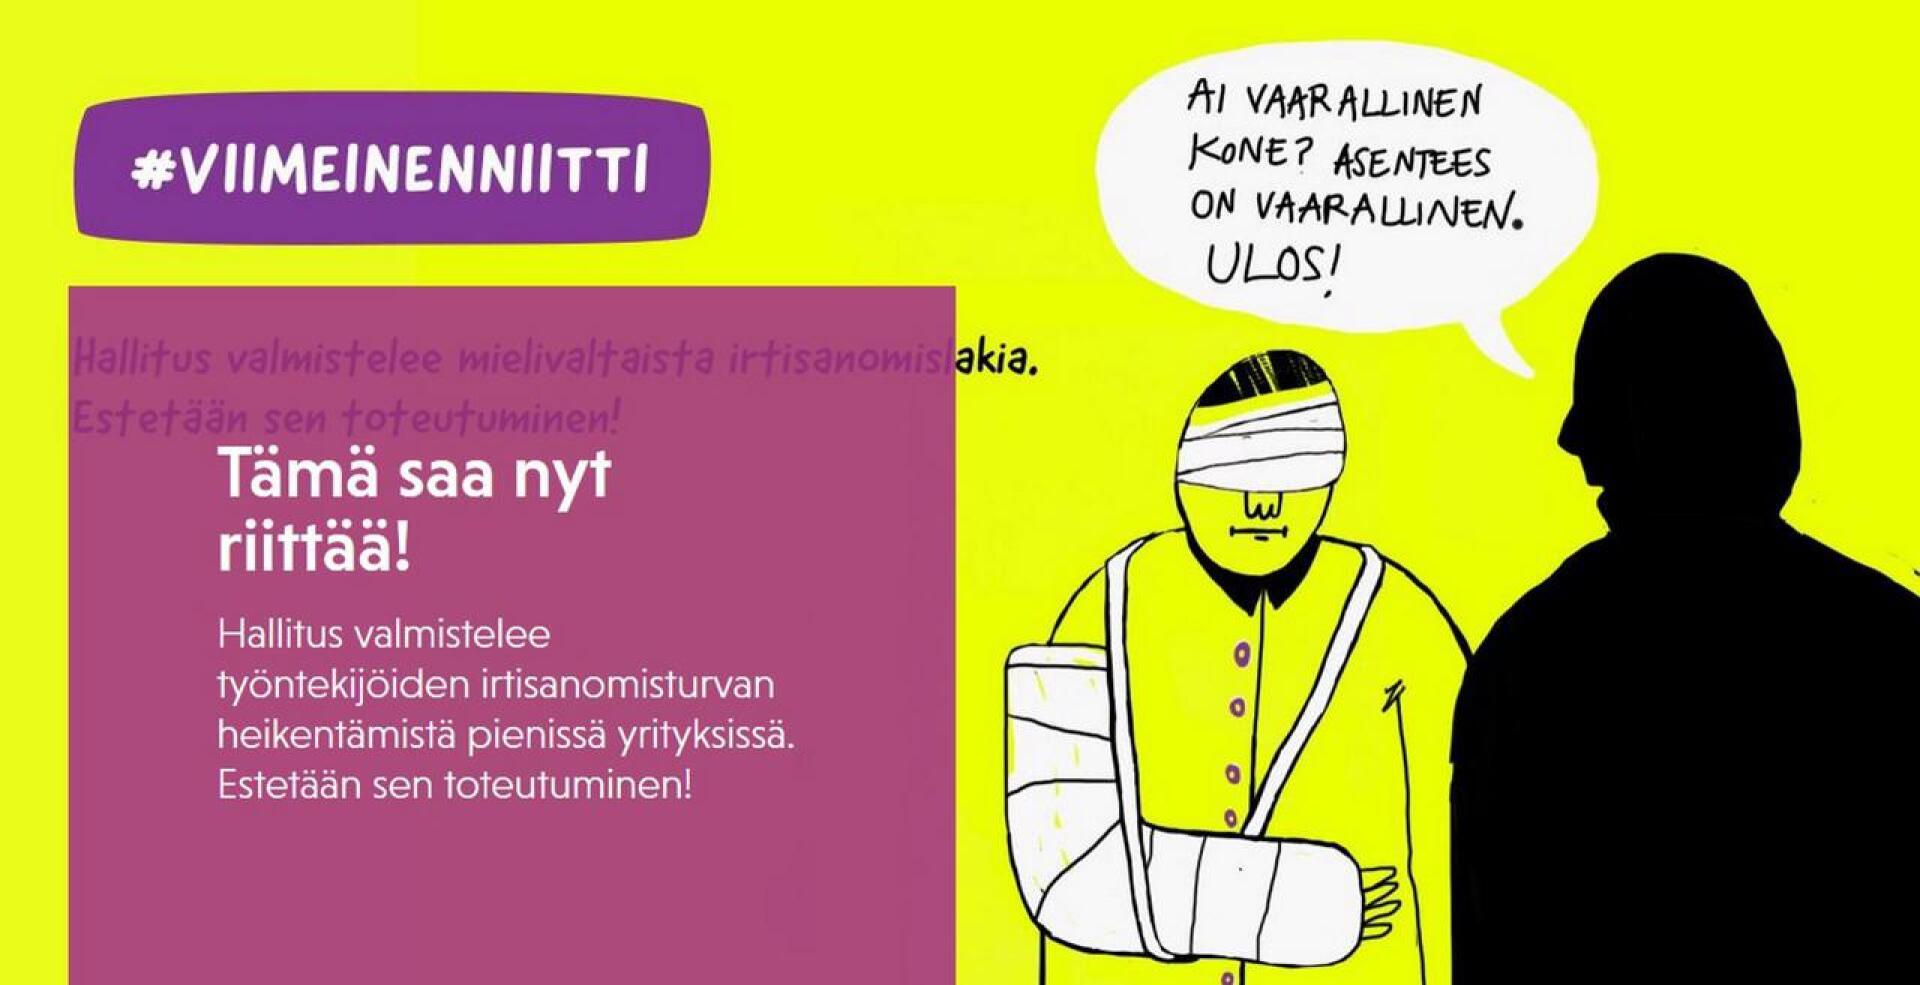 SAK:n Viimeinen niitti -mainoskampanja jatkuu kohutulla kuvalla verkkosivulla www.sak.fi/viimeinenniitti.